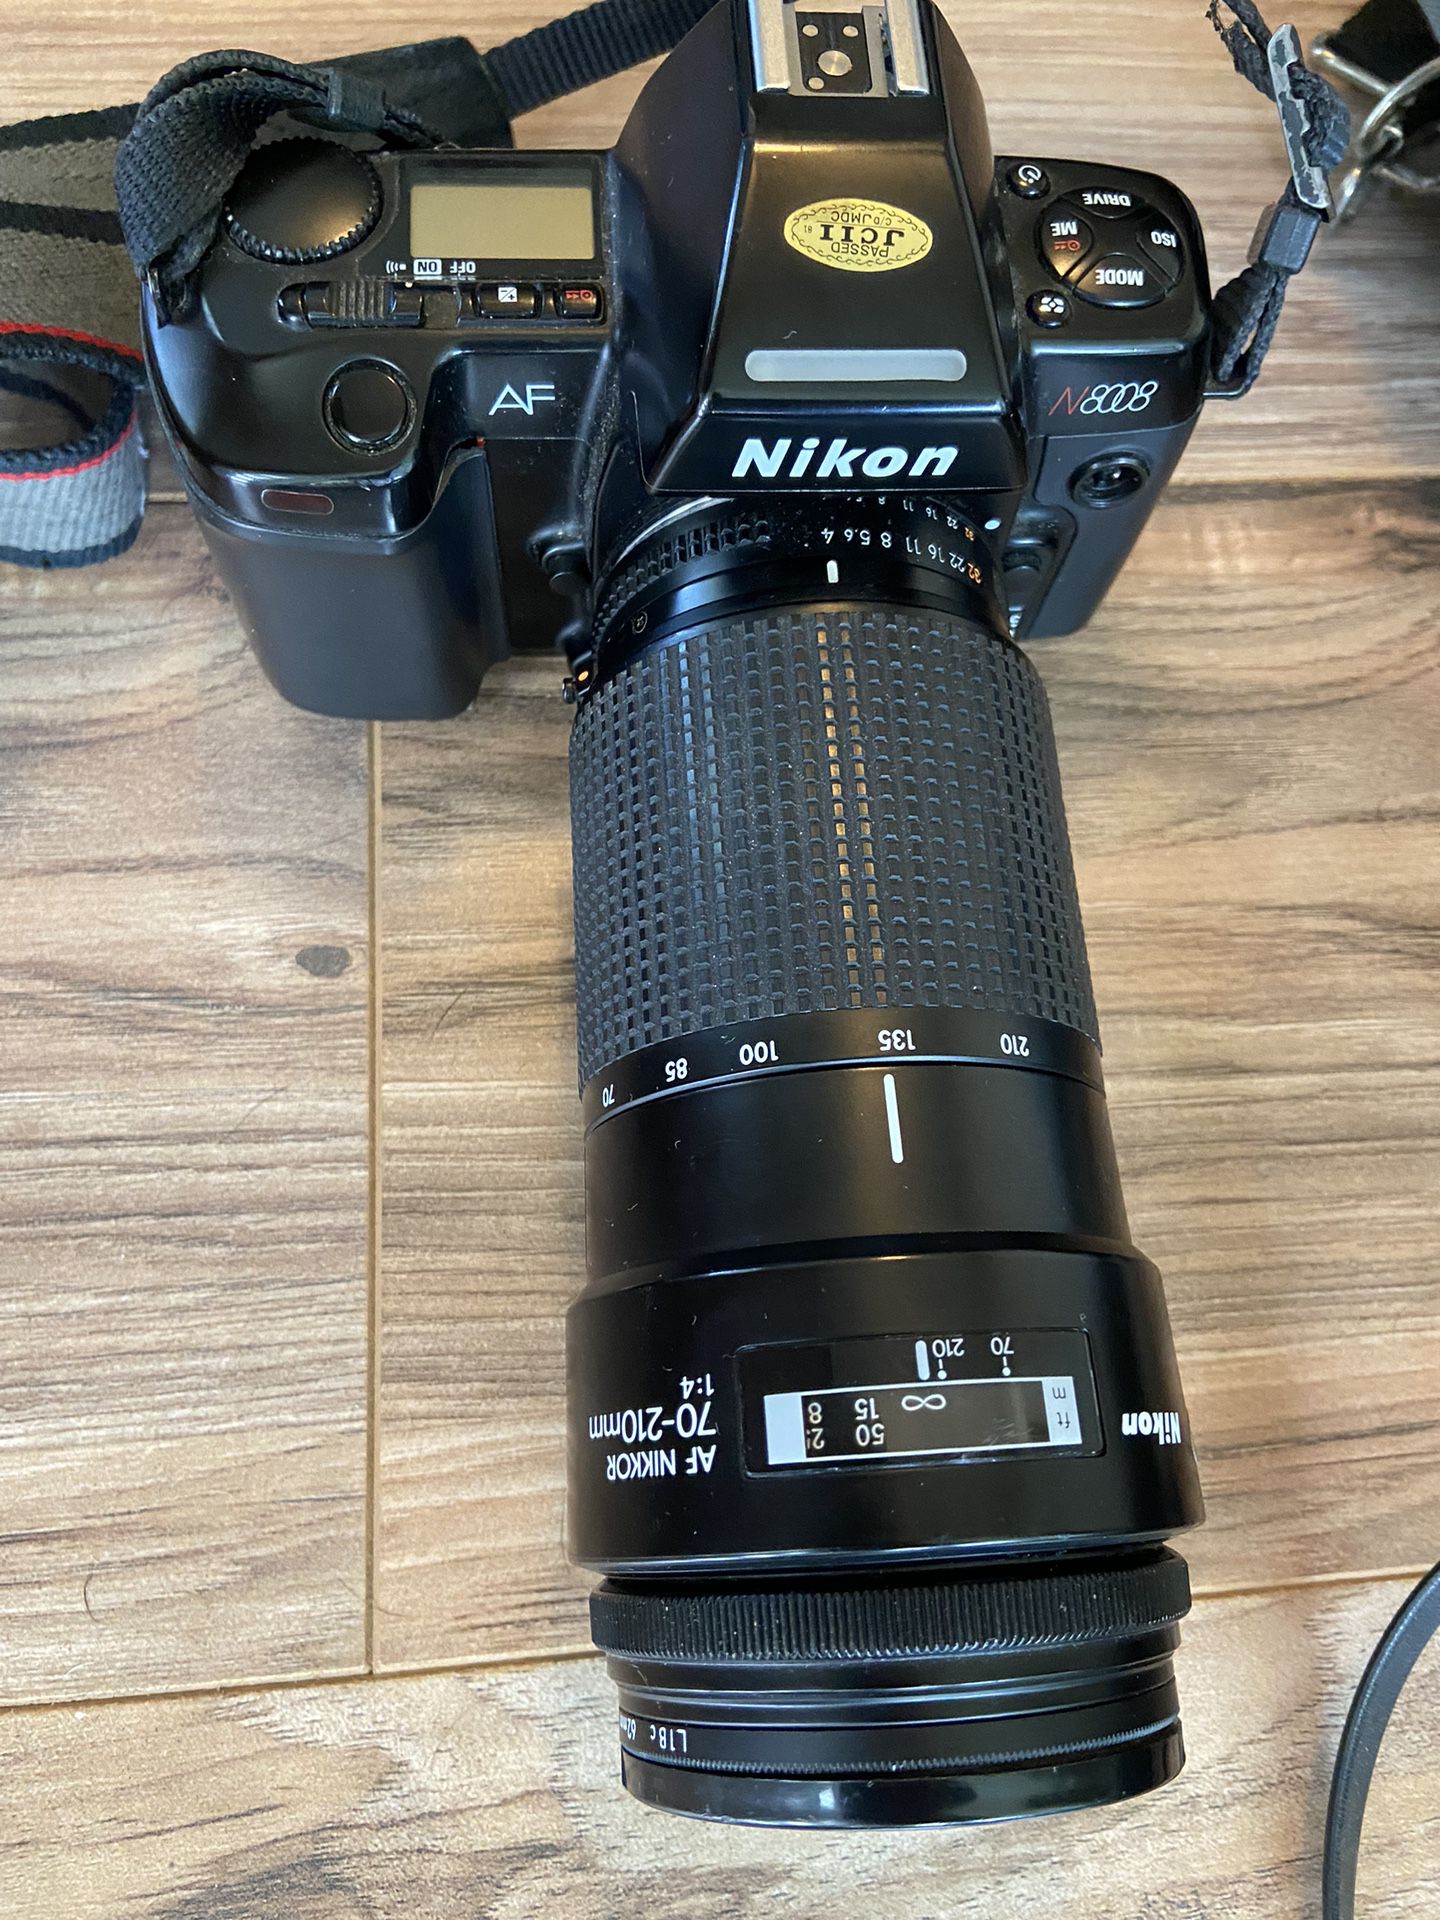 Nikon AF N8008 Camera with Assorted lens